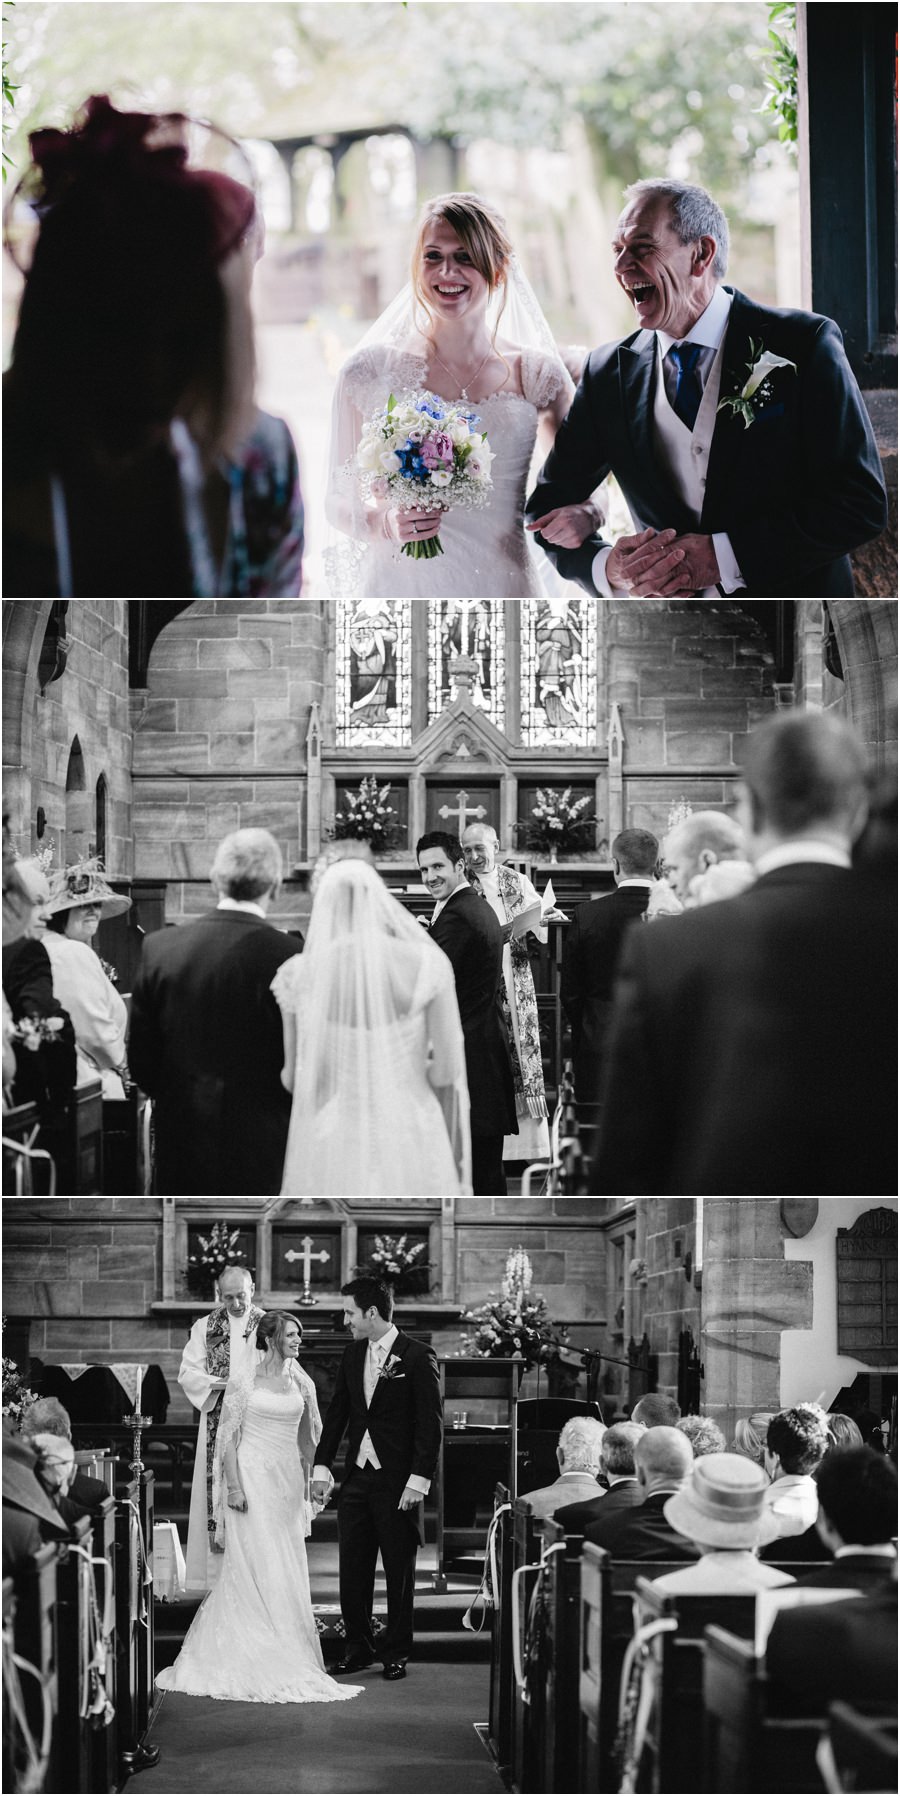 Sneak peek! Jen and Paul’s Sandon Hall wedding…